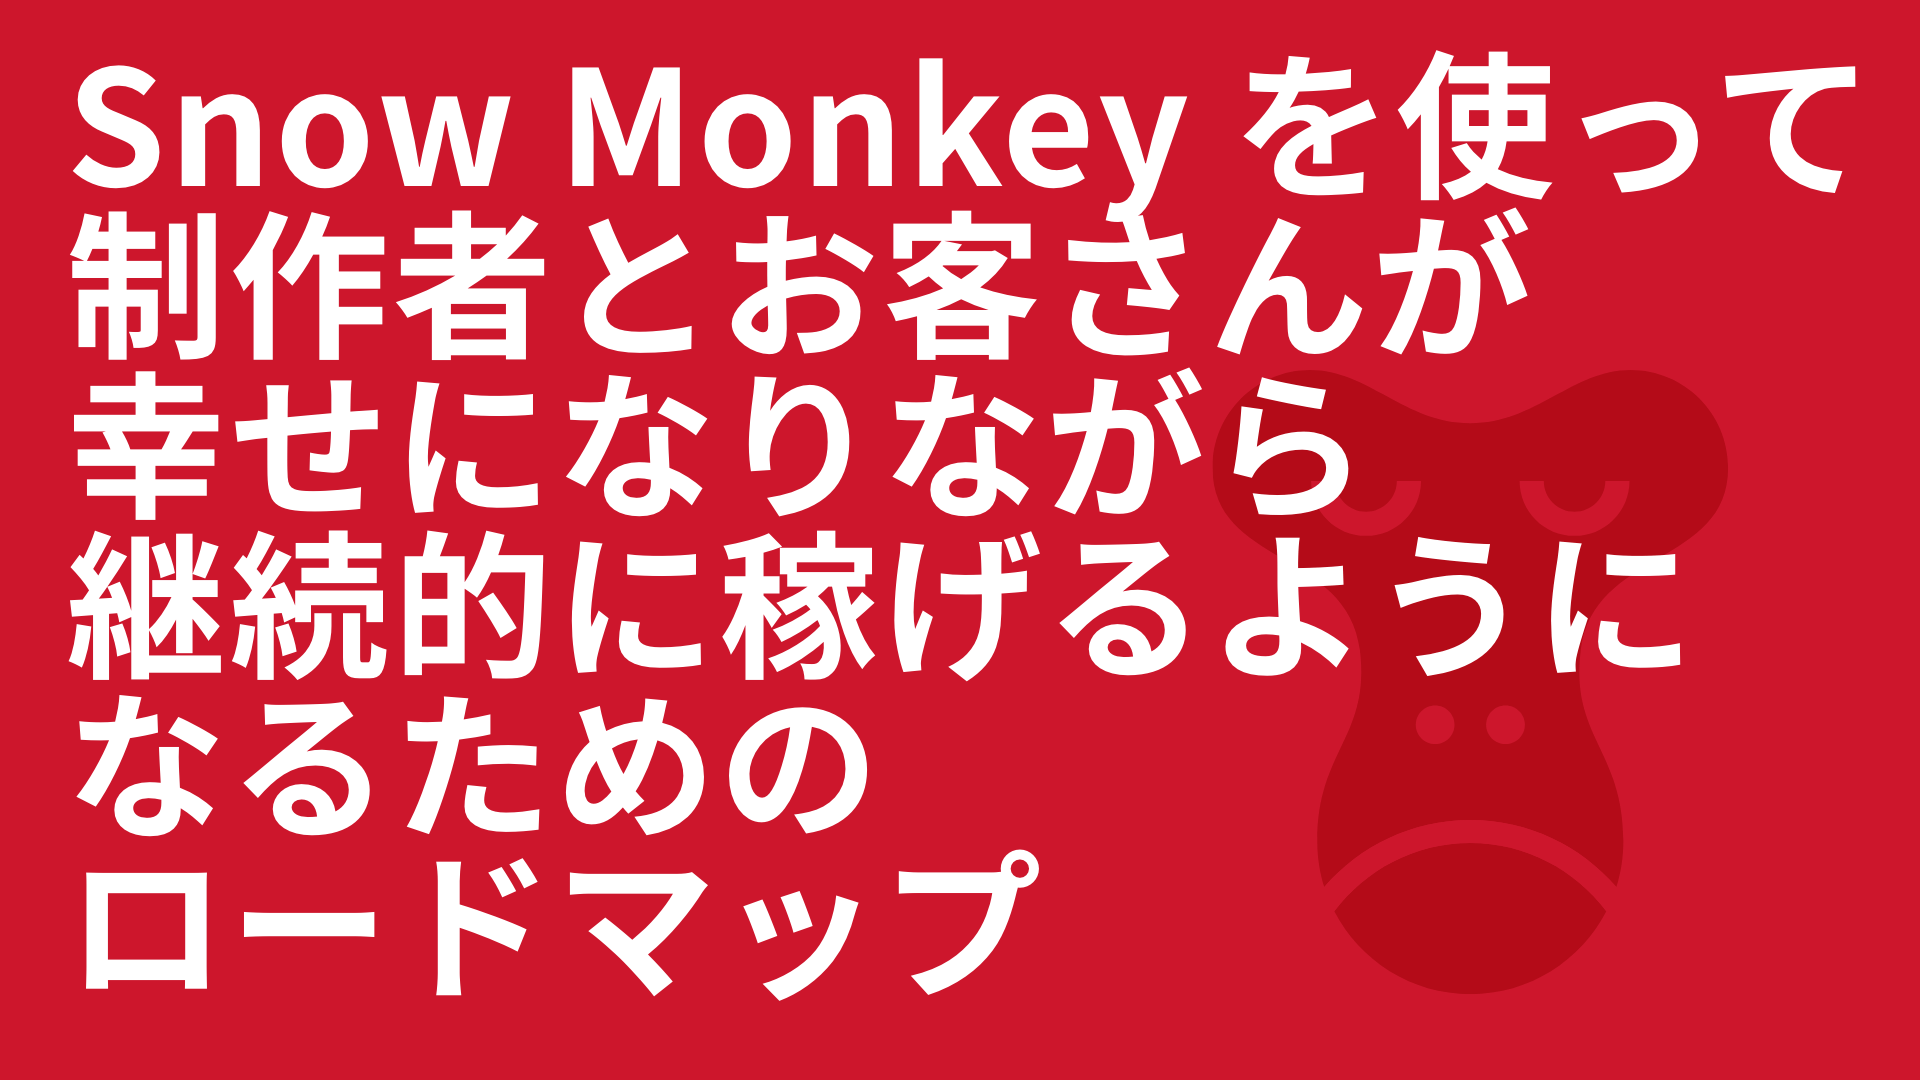 Snow Monkey を使って制作者とお客さんが幸せになりながら継続的に稼げるようになるためのロードマップ